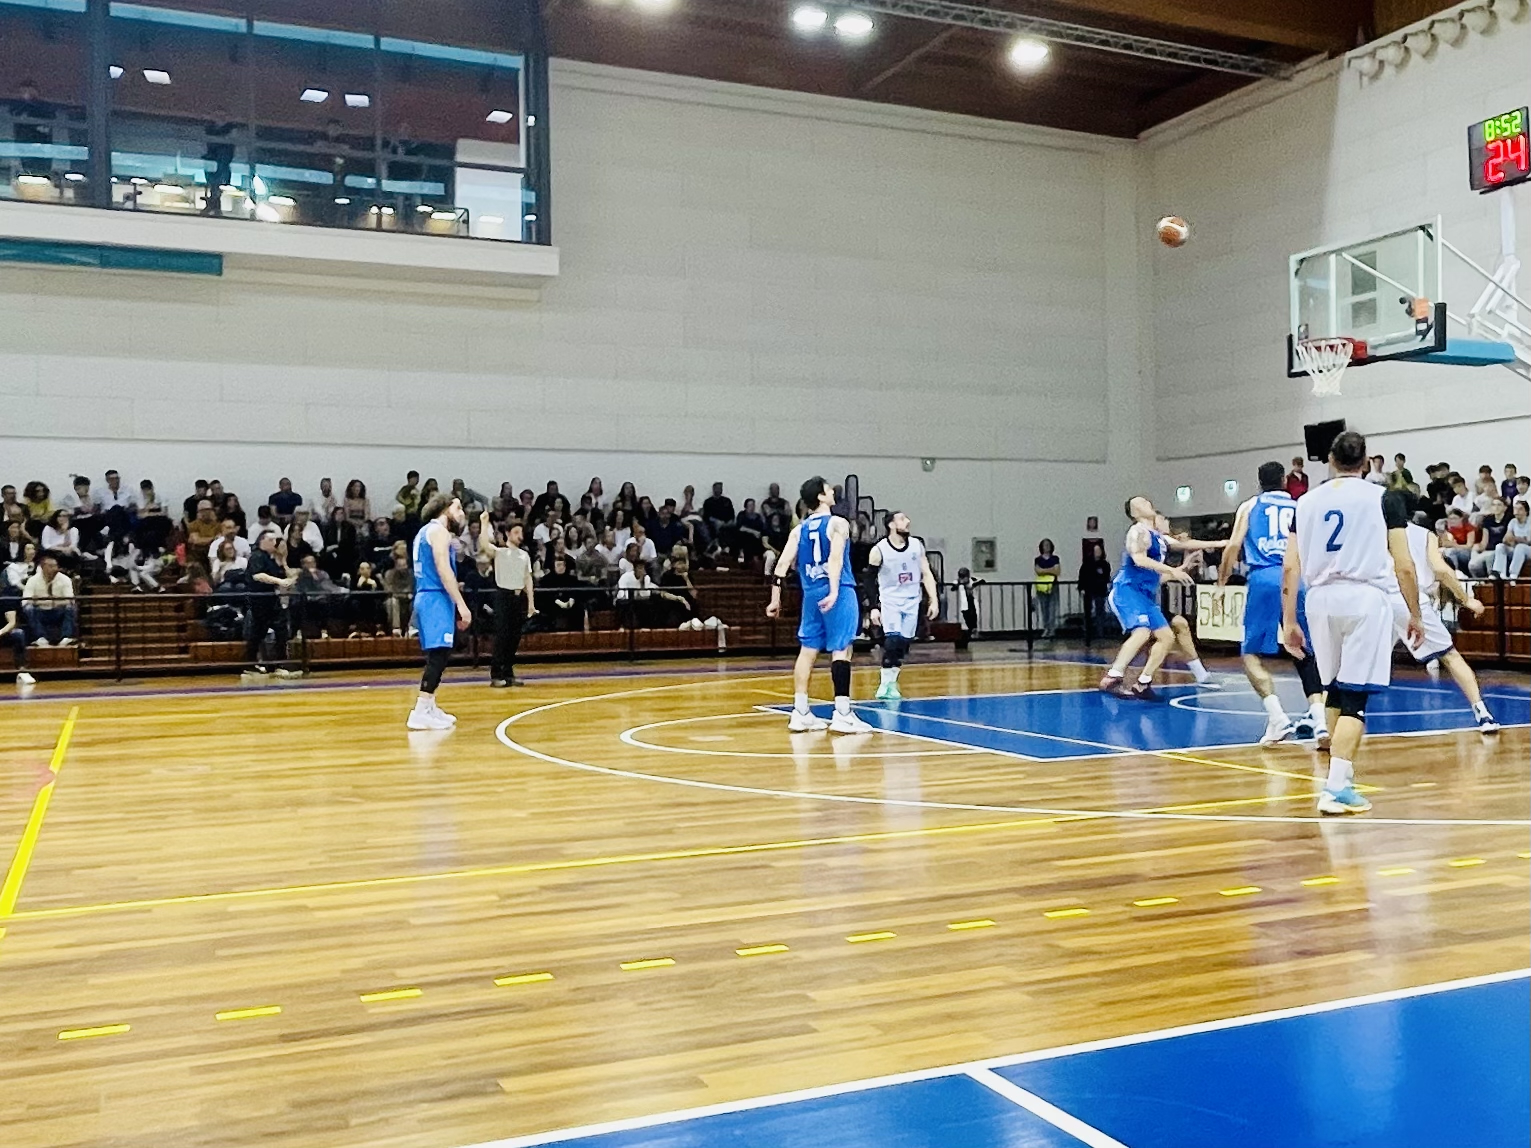 Titano San Marino - PSE Basket 76-72 dts: Grazie di tutto ragazzi!